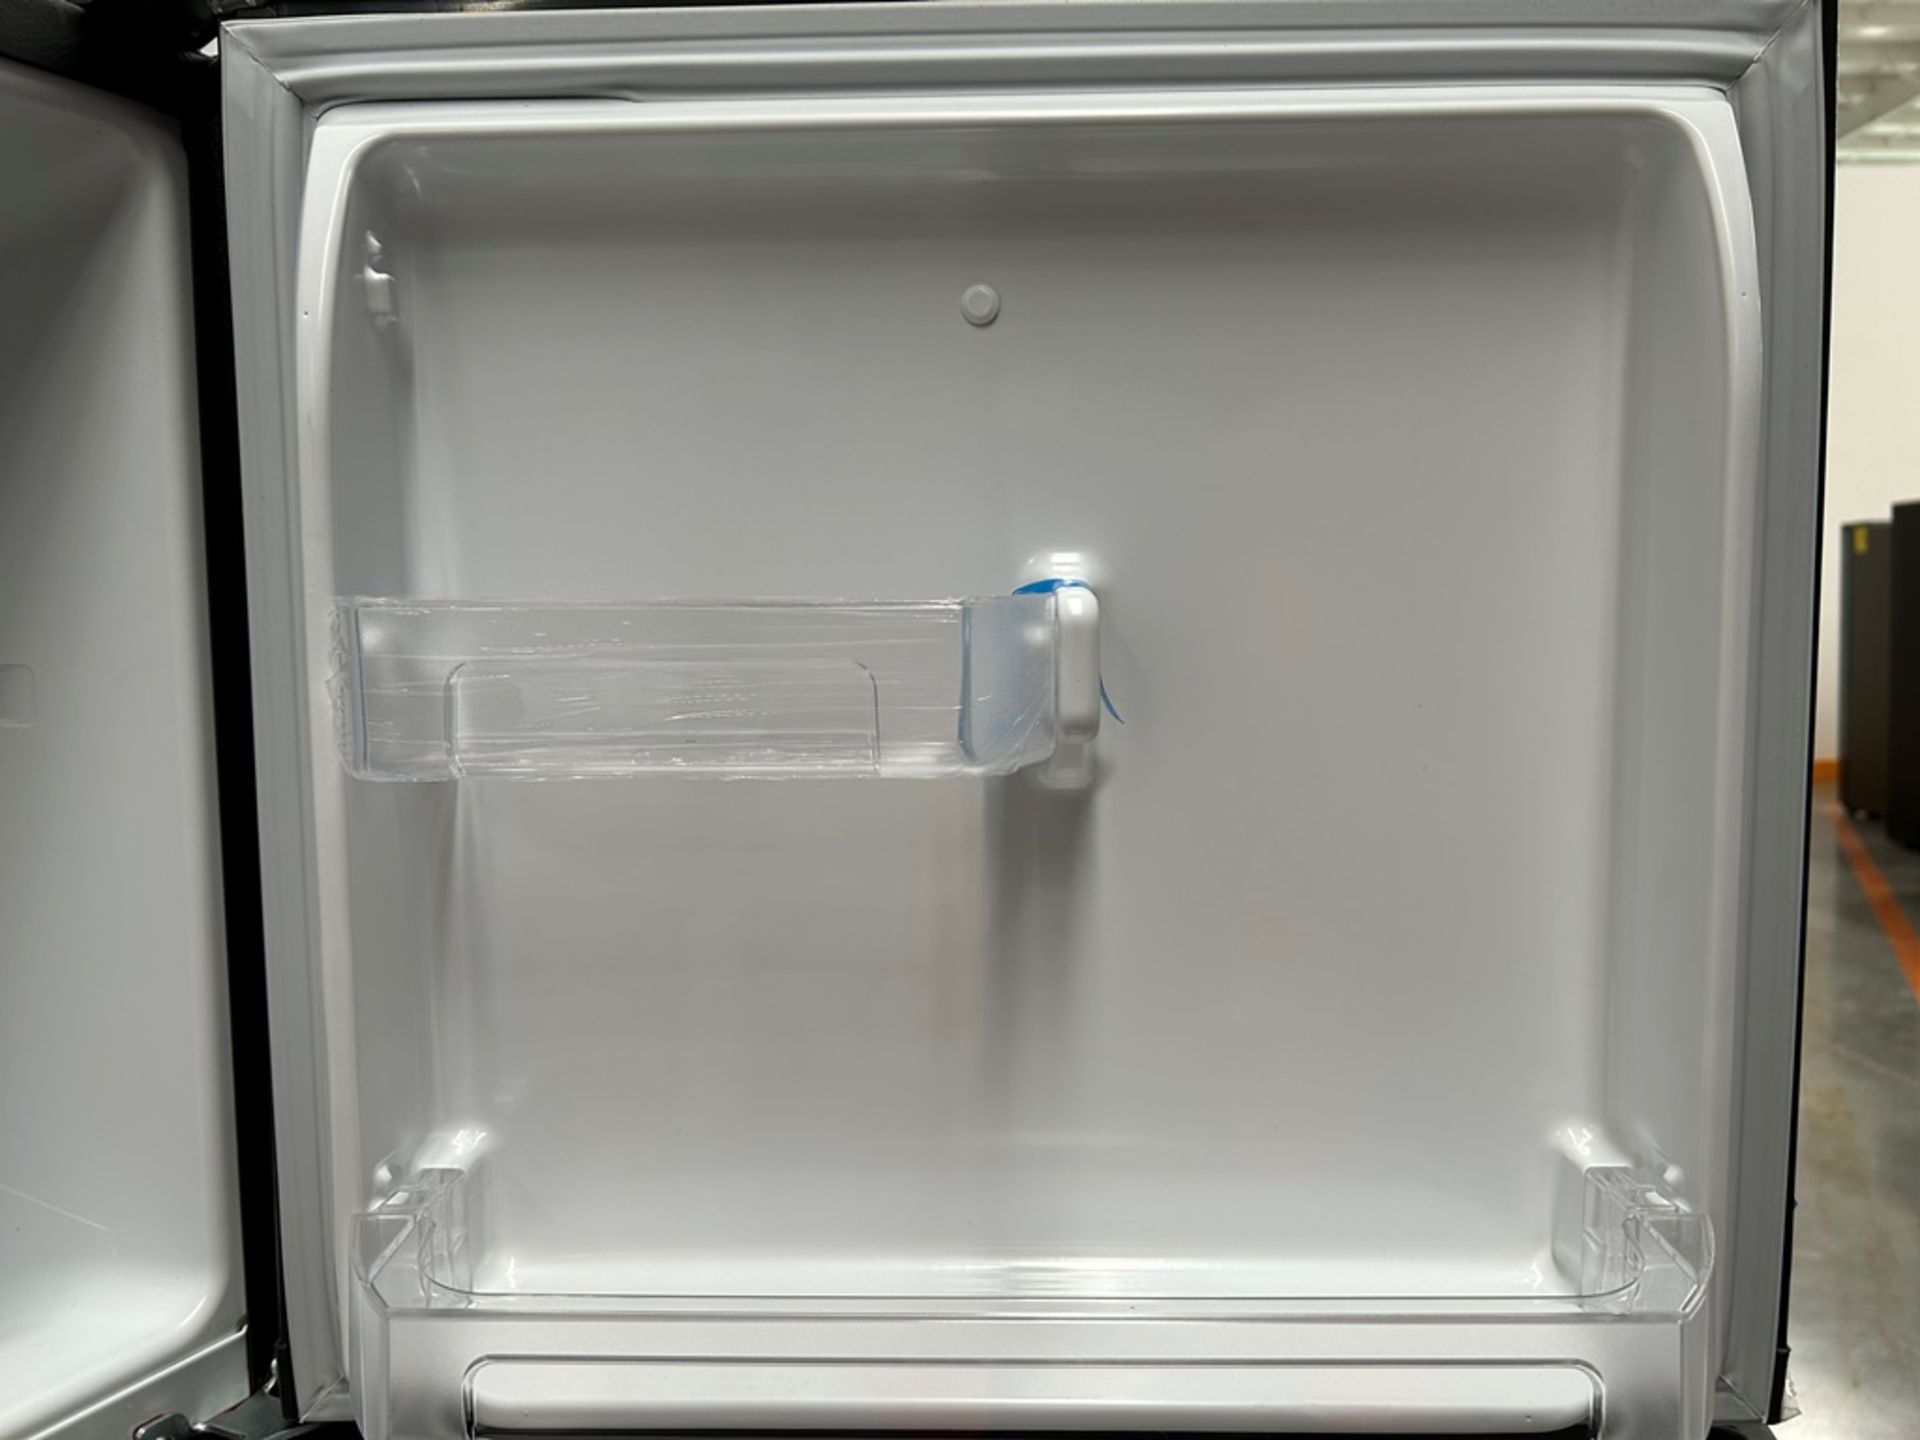 Lote de 2 refrigeradores contiene: 1 refrigerador Marca MABE, Modelo RMA250PVMRP0, Serie 13859, Col - Image 11 of 18